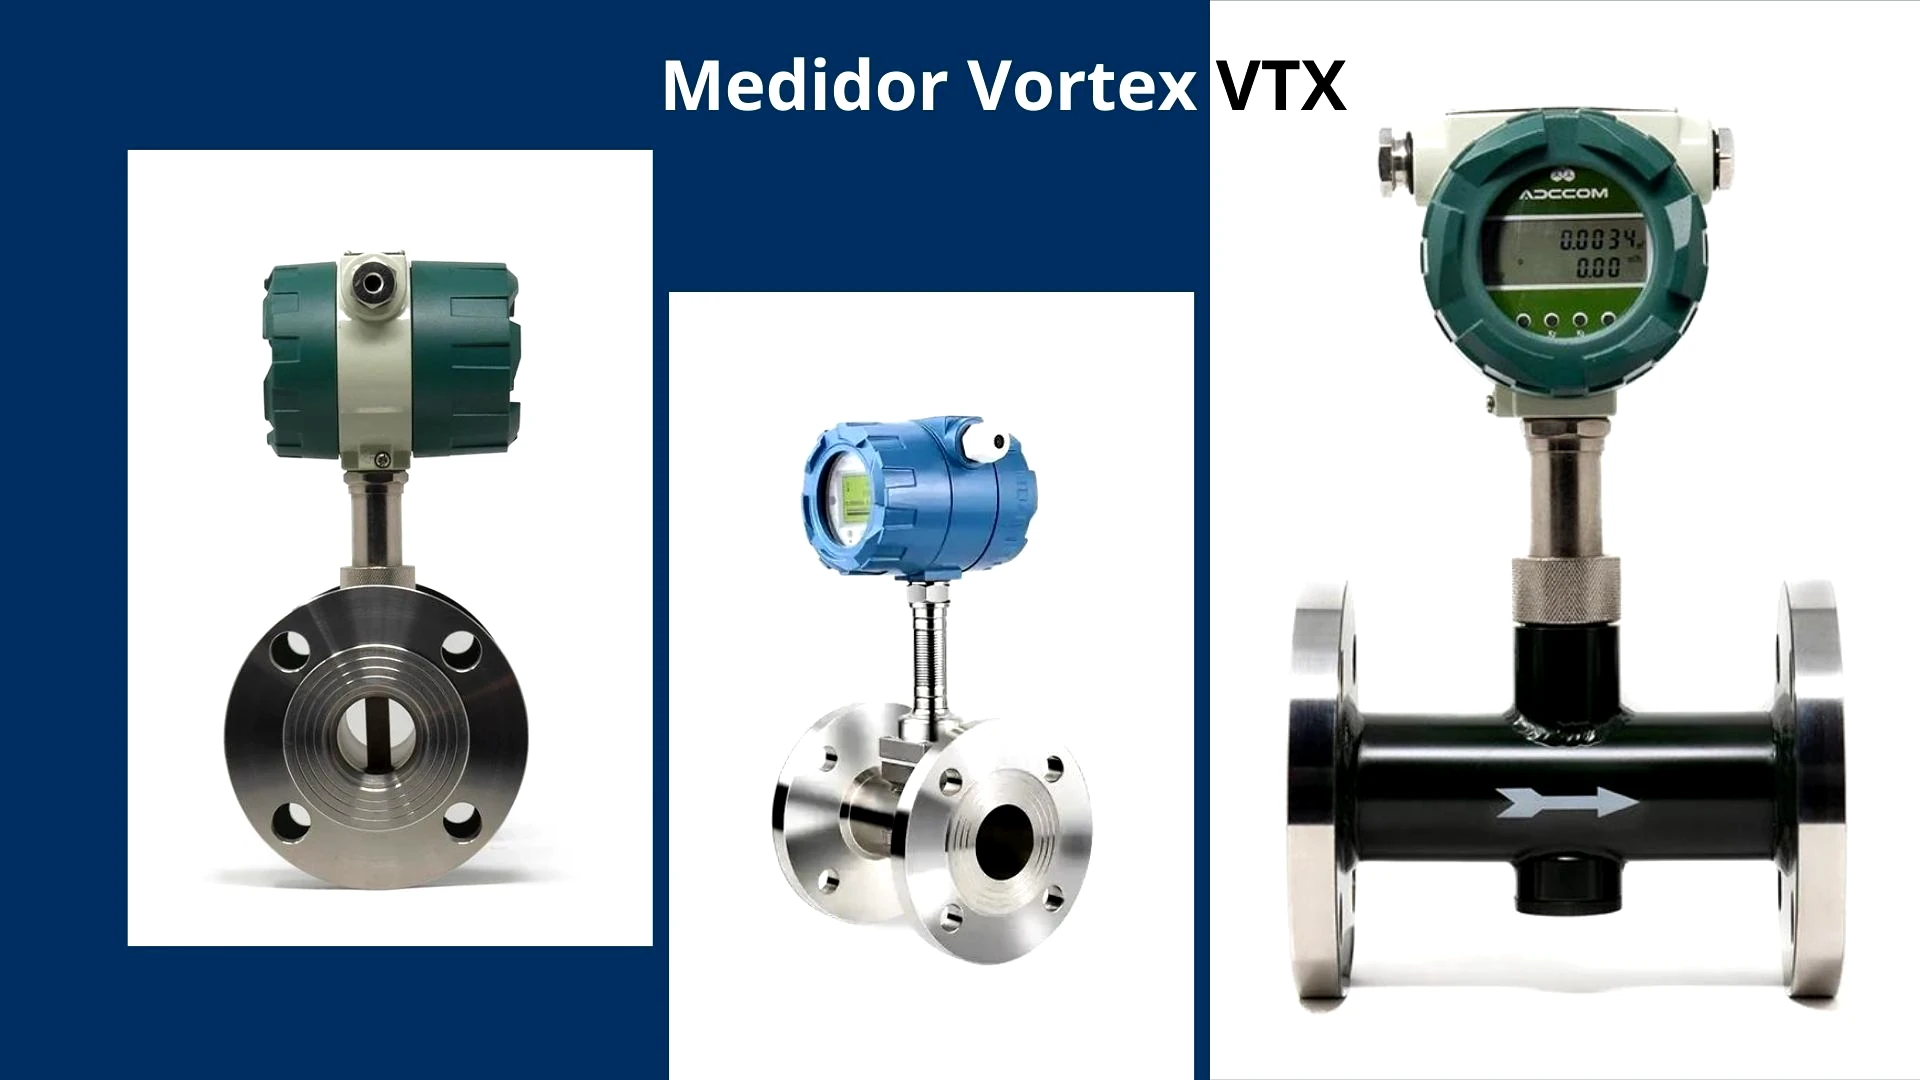 Medidor Vortex VTX